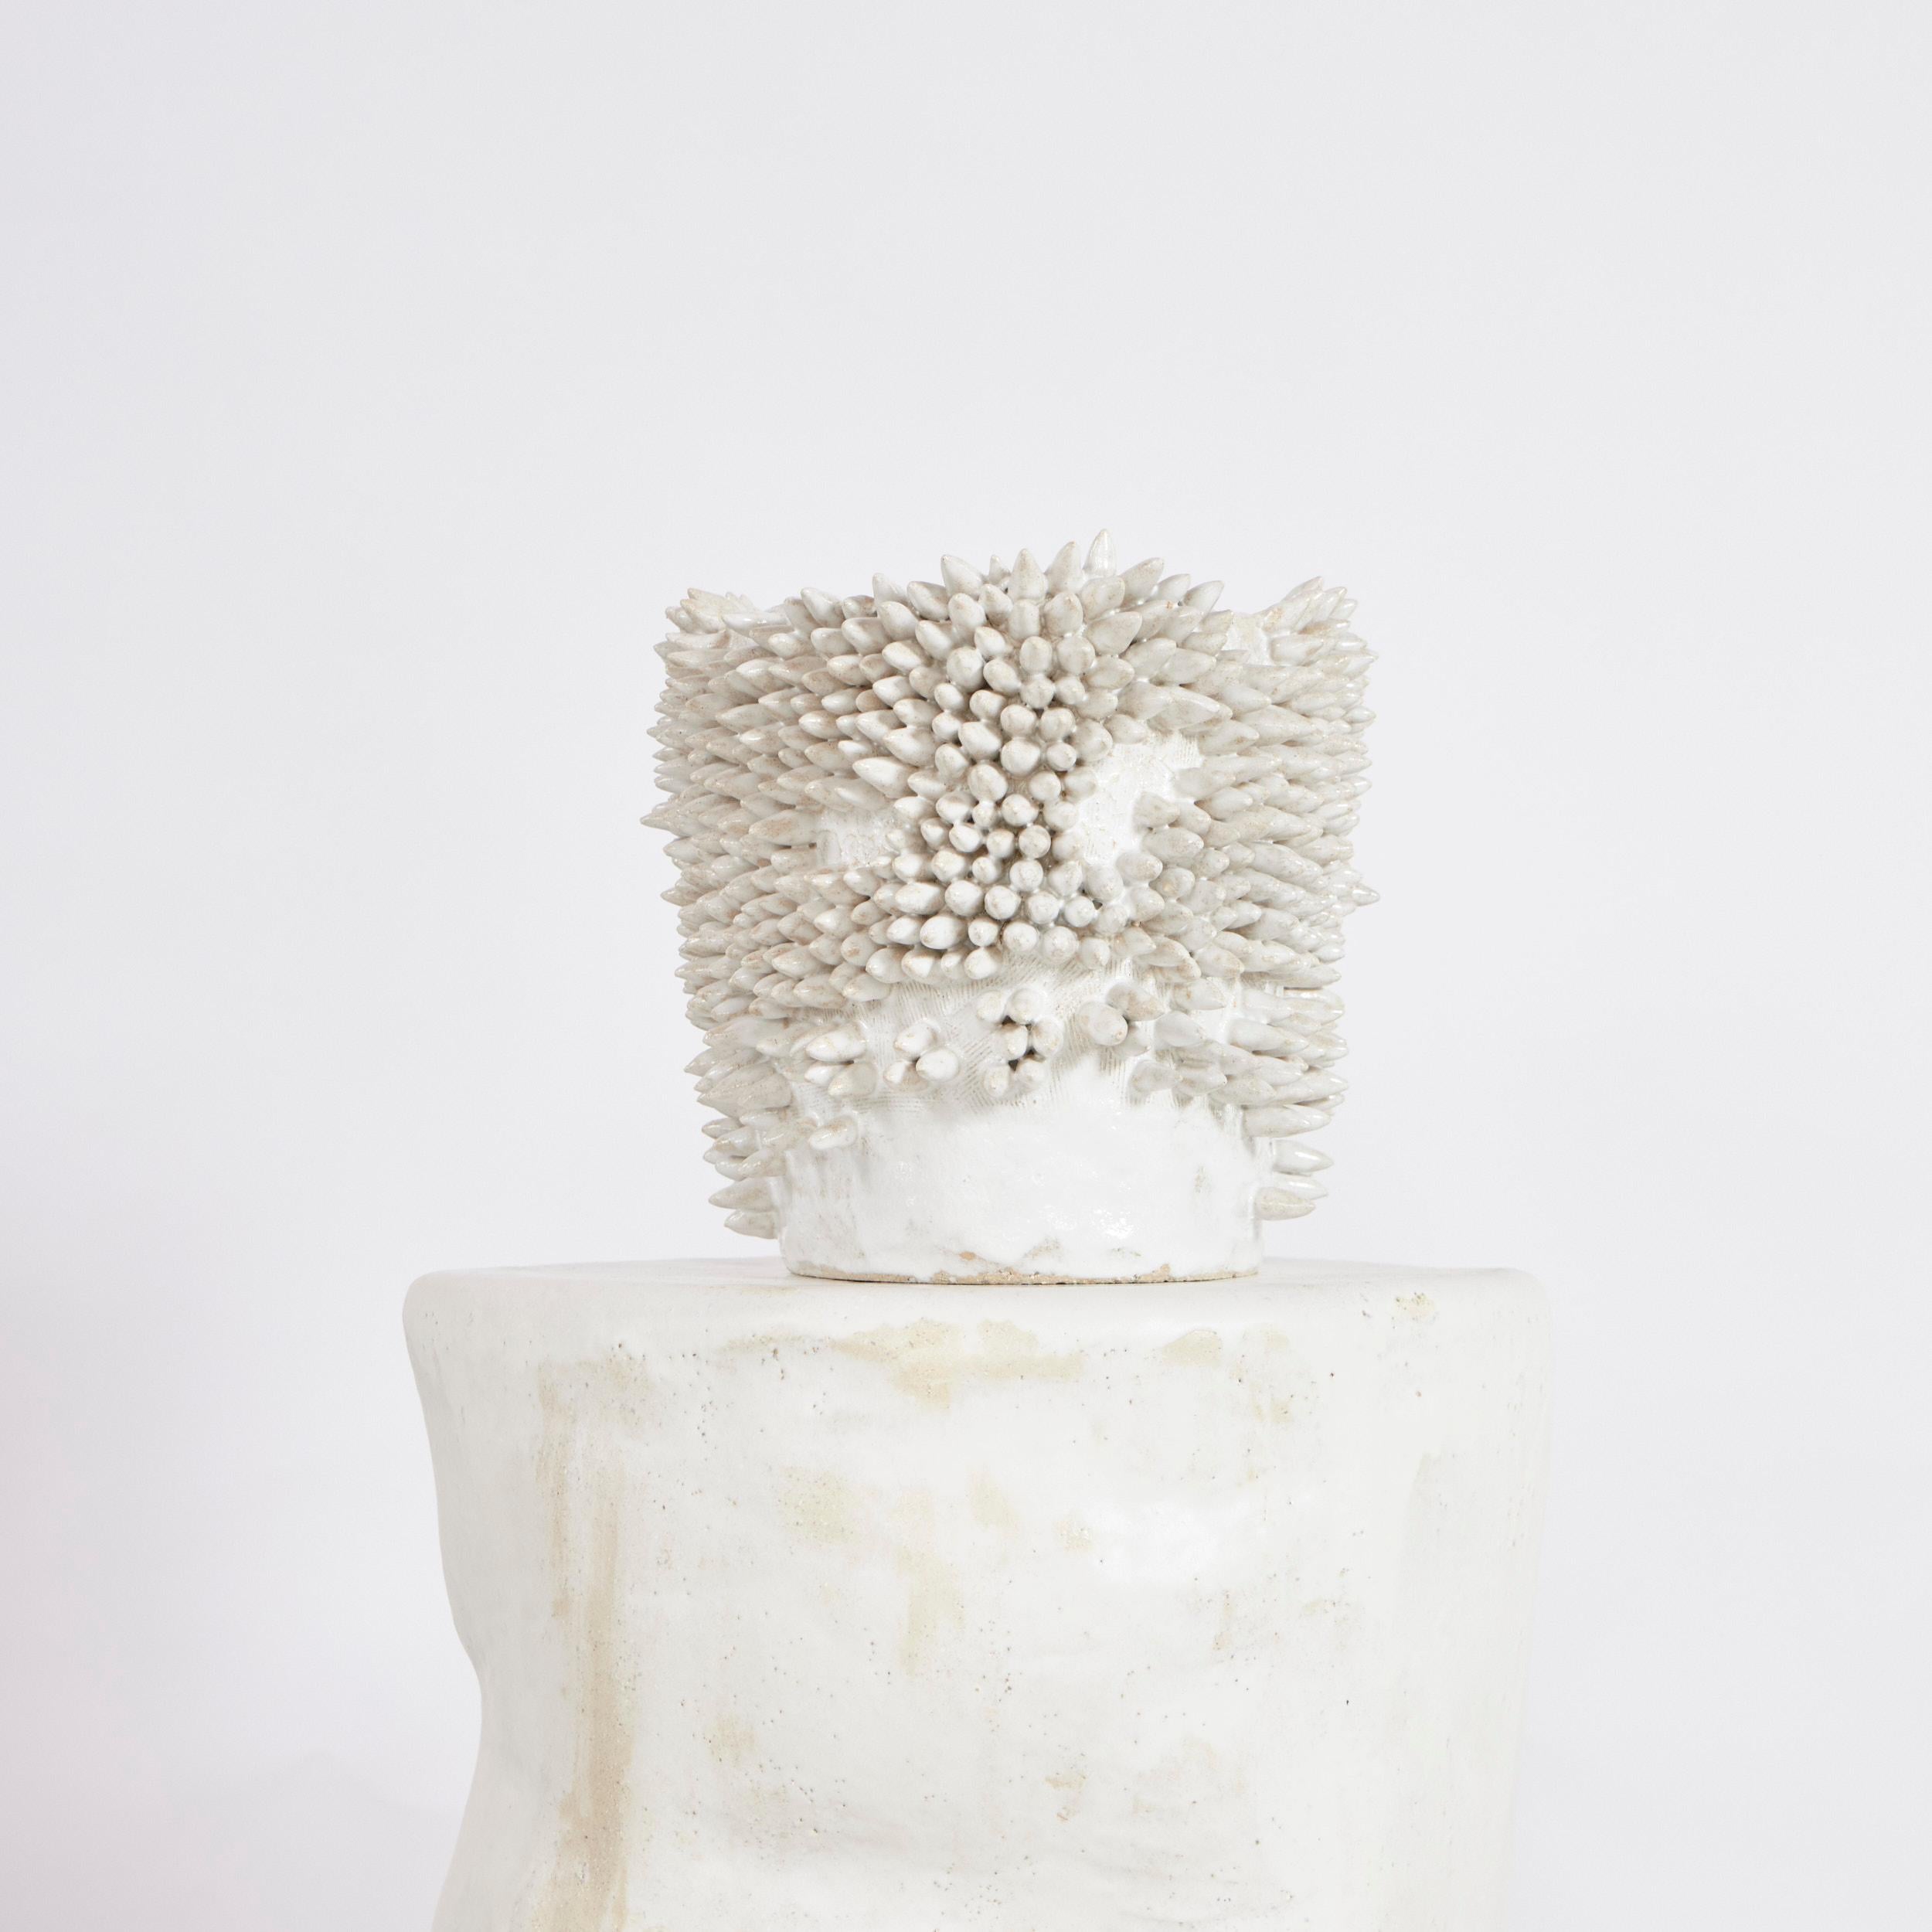 Vase Appuntito Large en blanc
Conçu par le project 213A en 2023

Vase artisanal en céramique créé par des artisans qualifiés dans l'atelier de céramique du project 213A. L'ensemble du vase est recouvert de pointes 